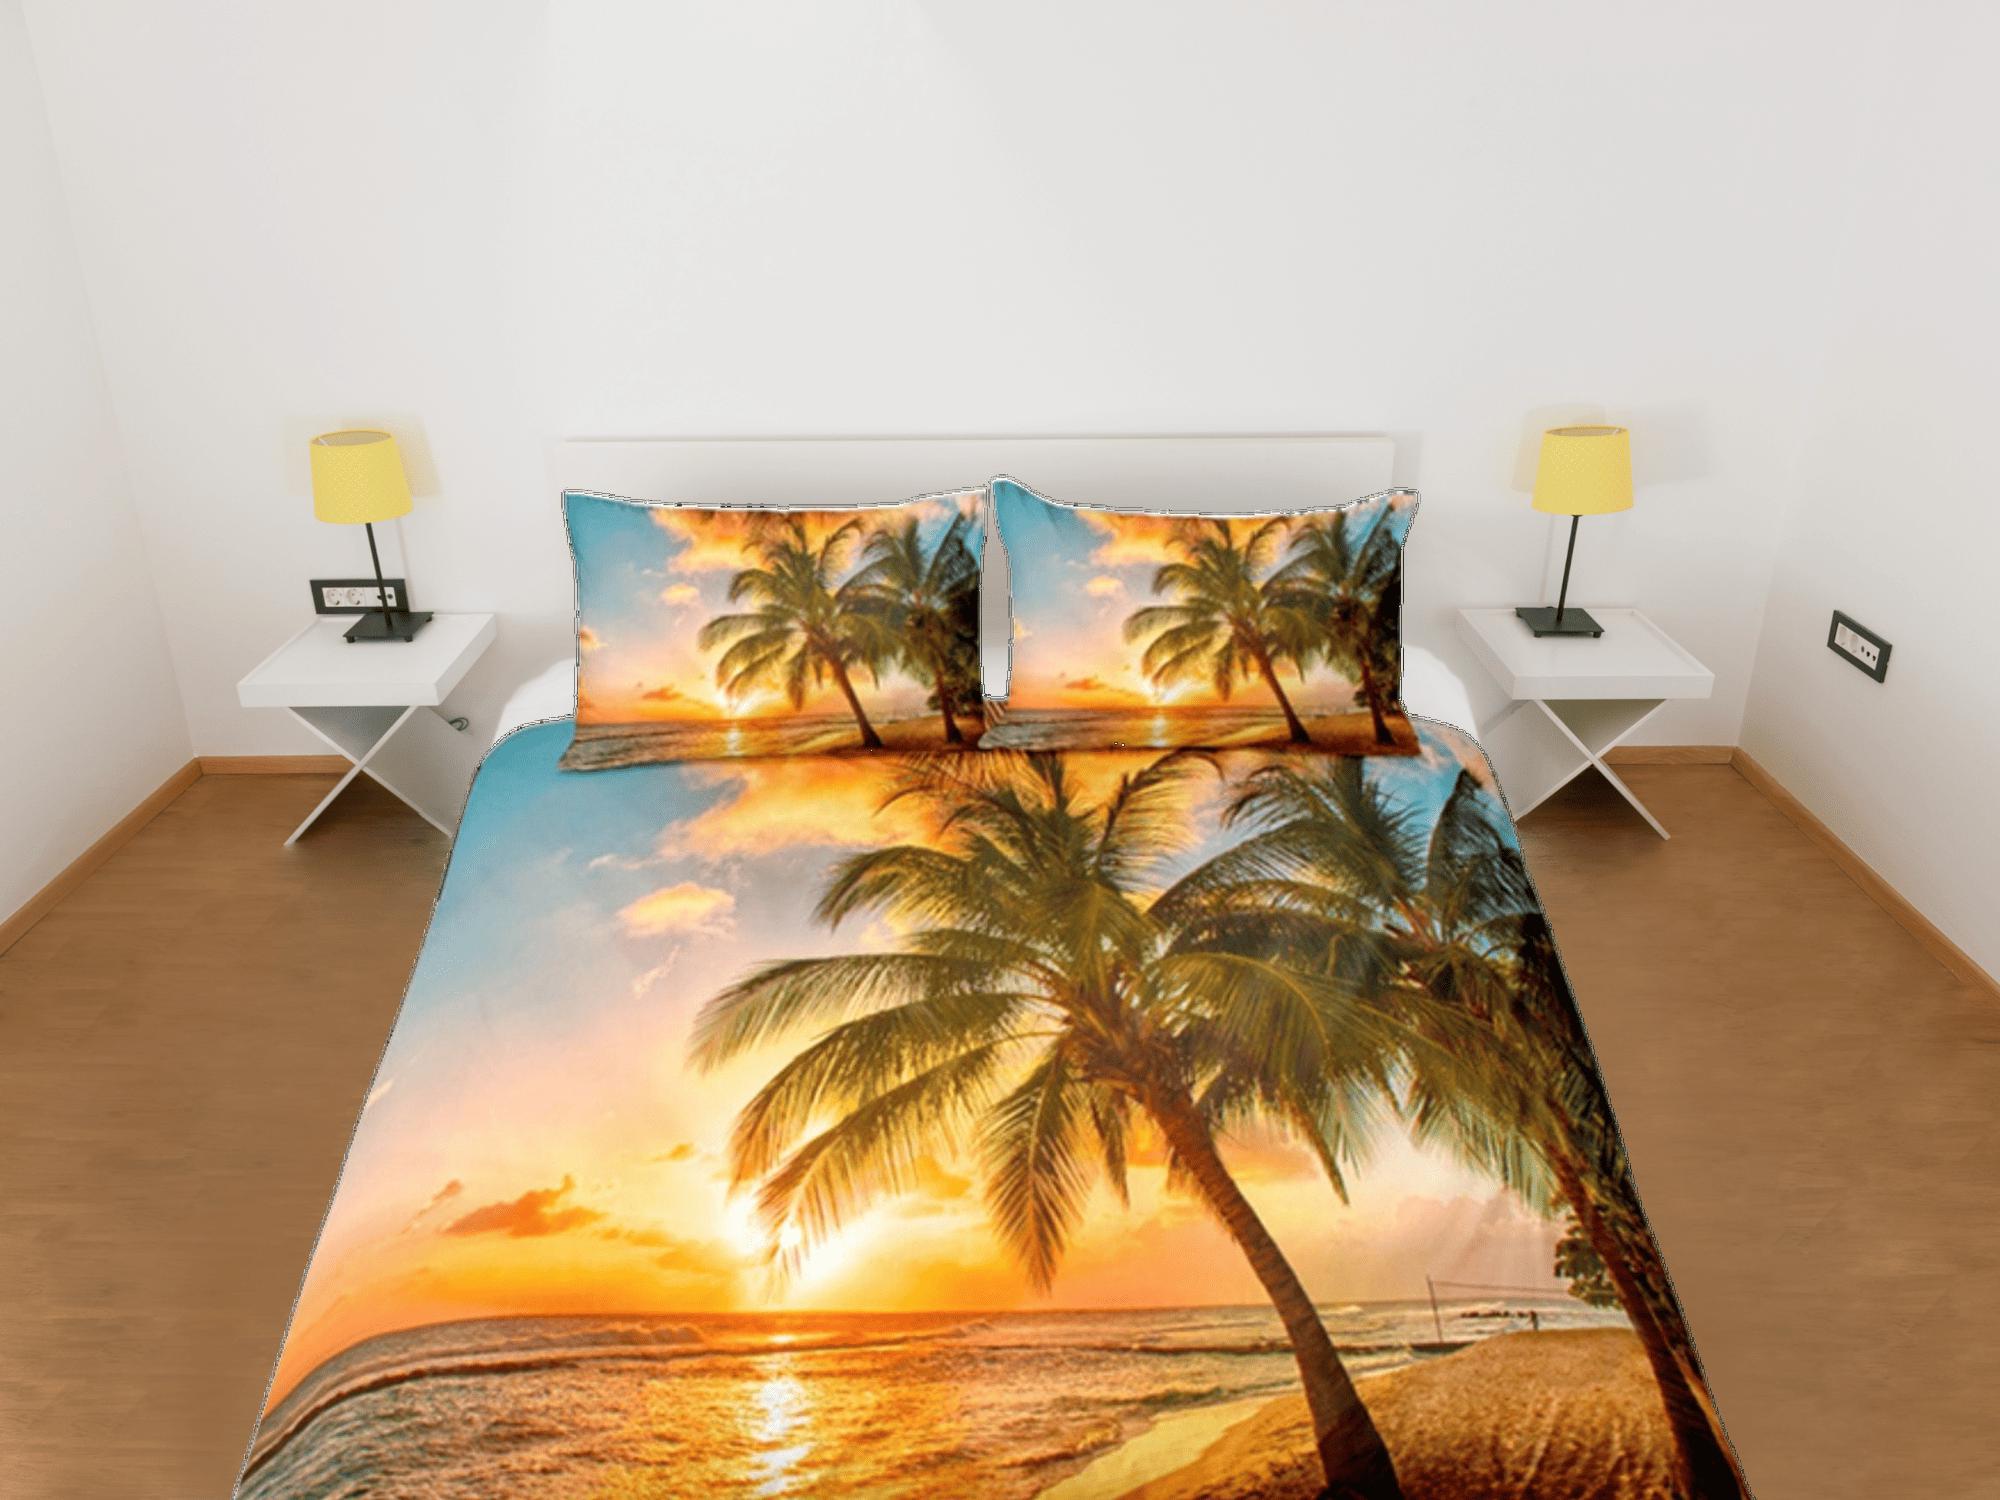 daintyduvet Coconut Tree Ocean Duvet Cover Set, Beach Sunset Dorm Bedding Set, Single Bedding, Tropical Decor